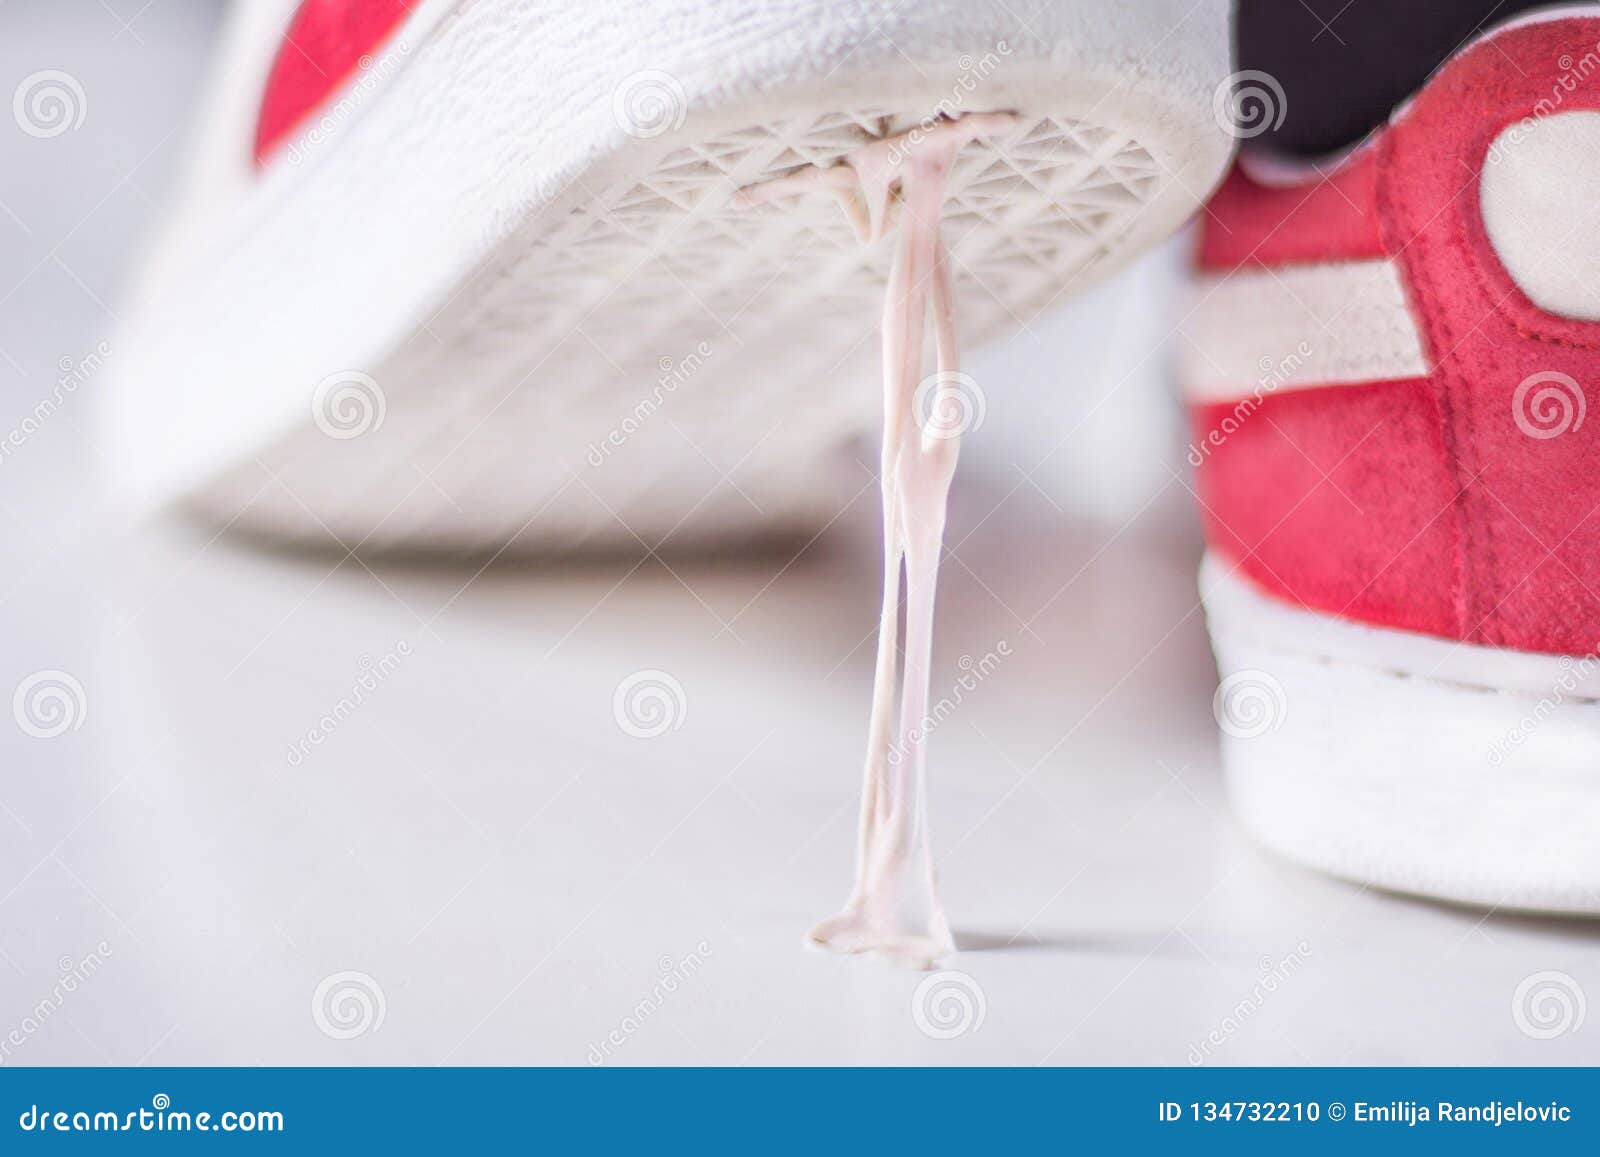 Zapatillas De Deporte Que Caminan En Chicle En La Superficie Blanca de archivo - Imagen de burbuja, viscosidad: 134732210